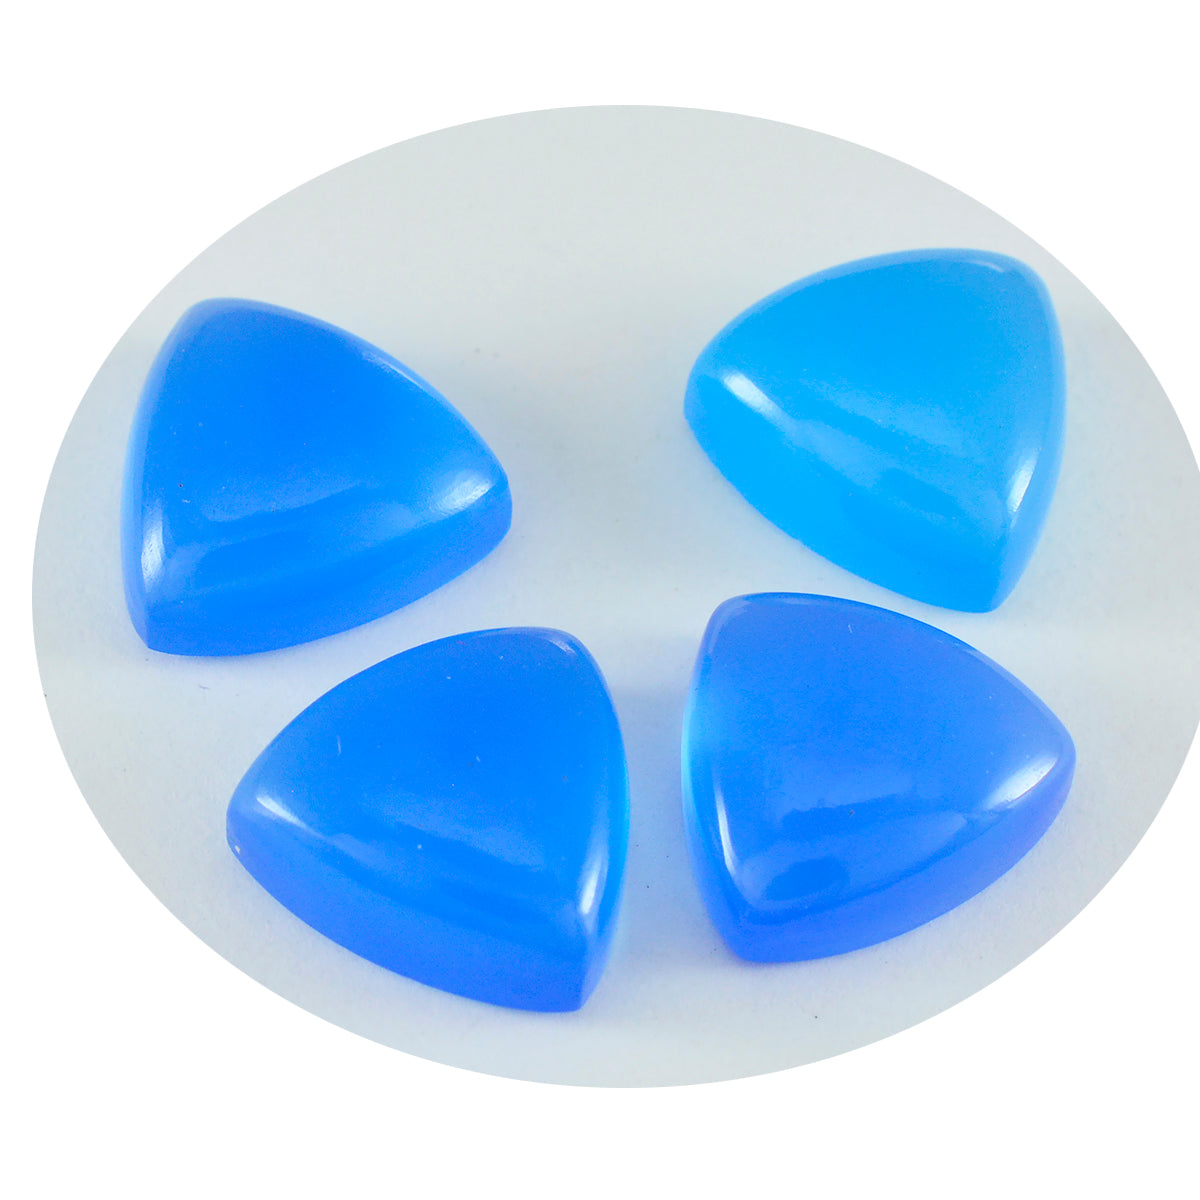 Riyogems 1 Stück blauer Chalcedon-Cabochon, 9 x 9 mm, Trillionenform, süßer, hochwertiger, loser Edelstein